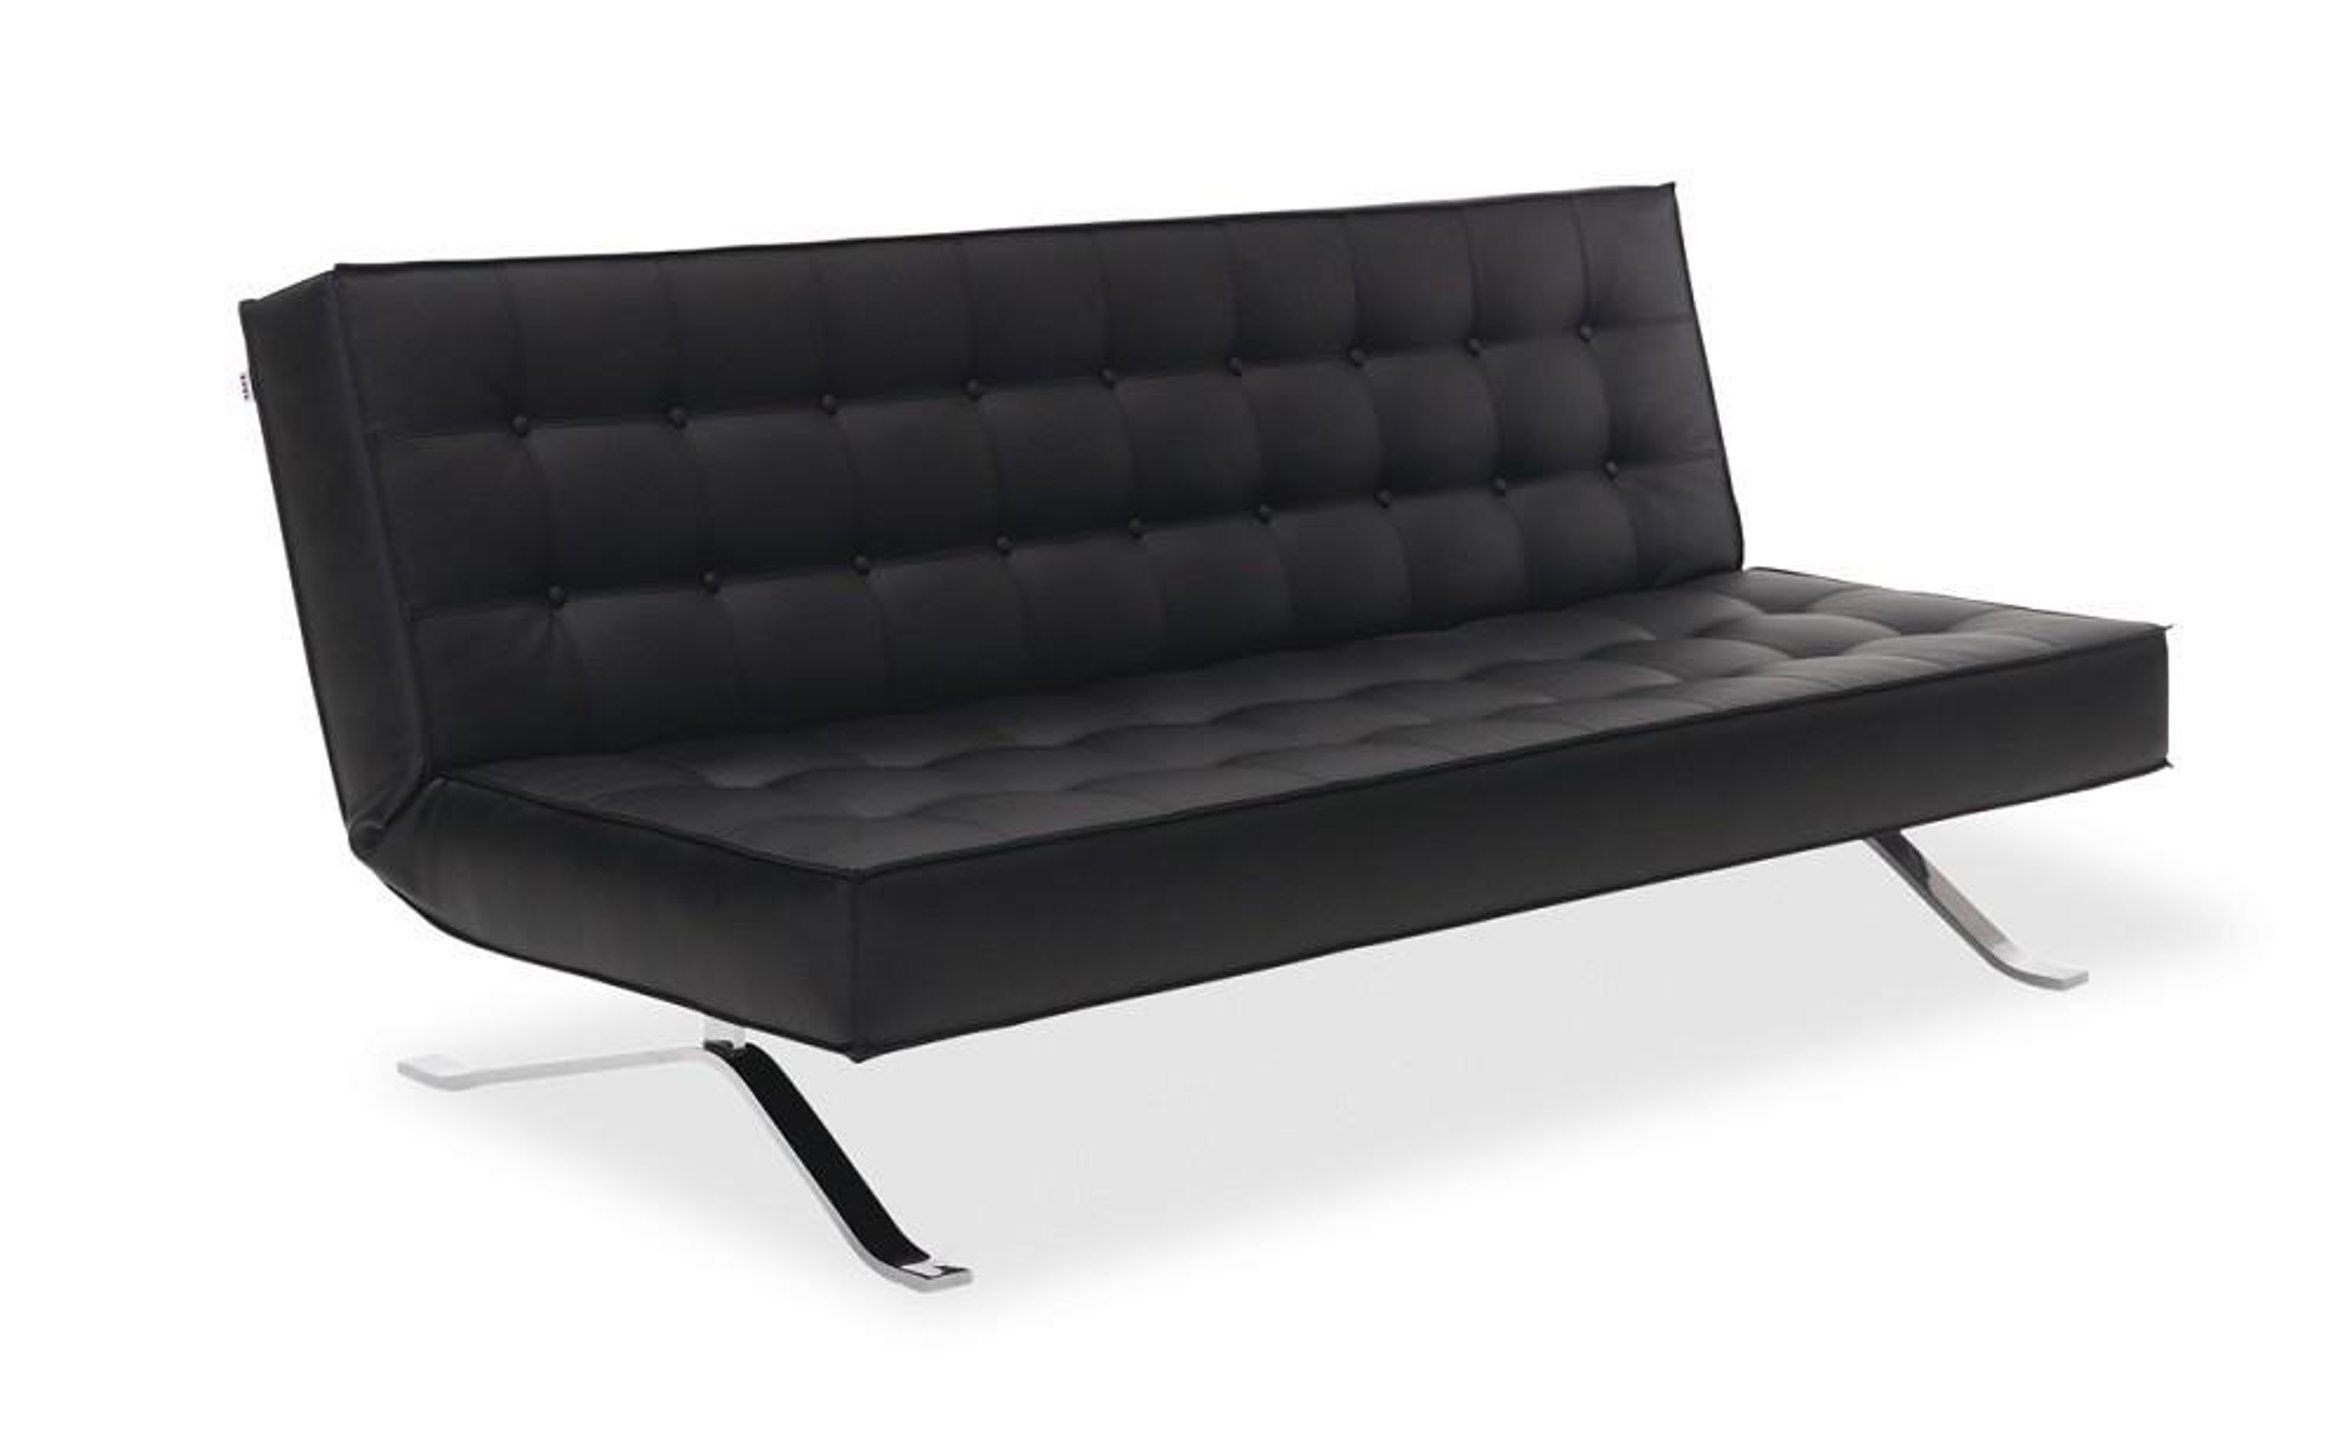 jk044-3 sofa bed